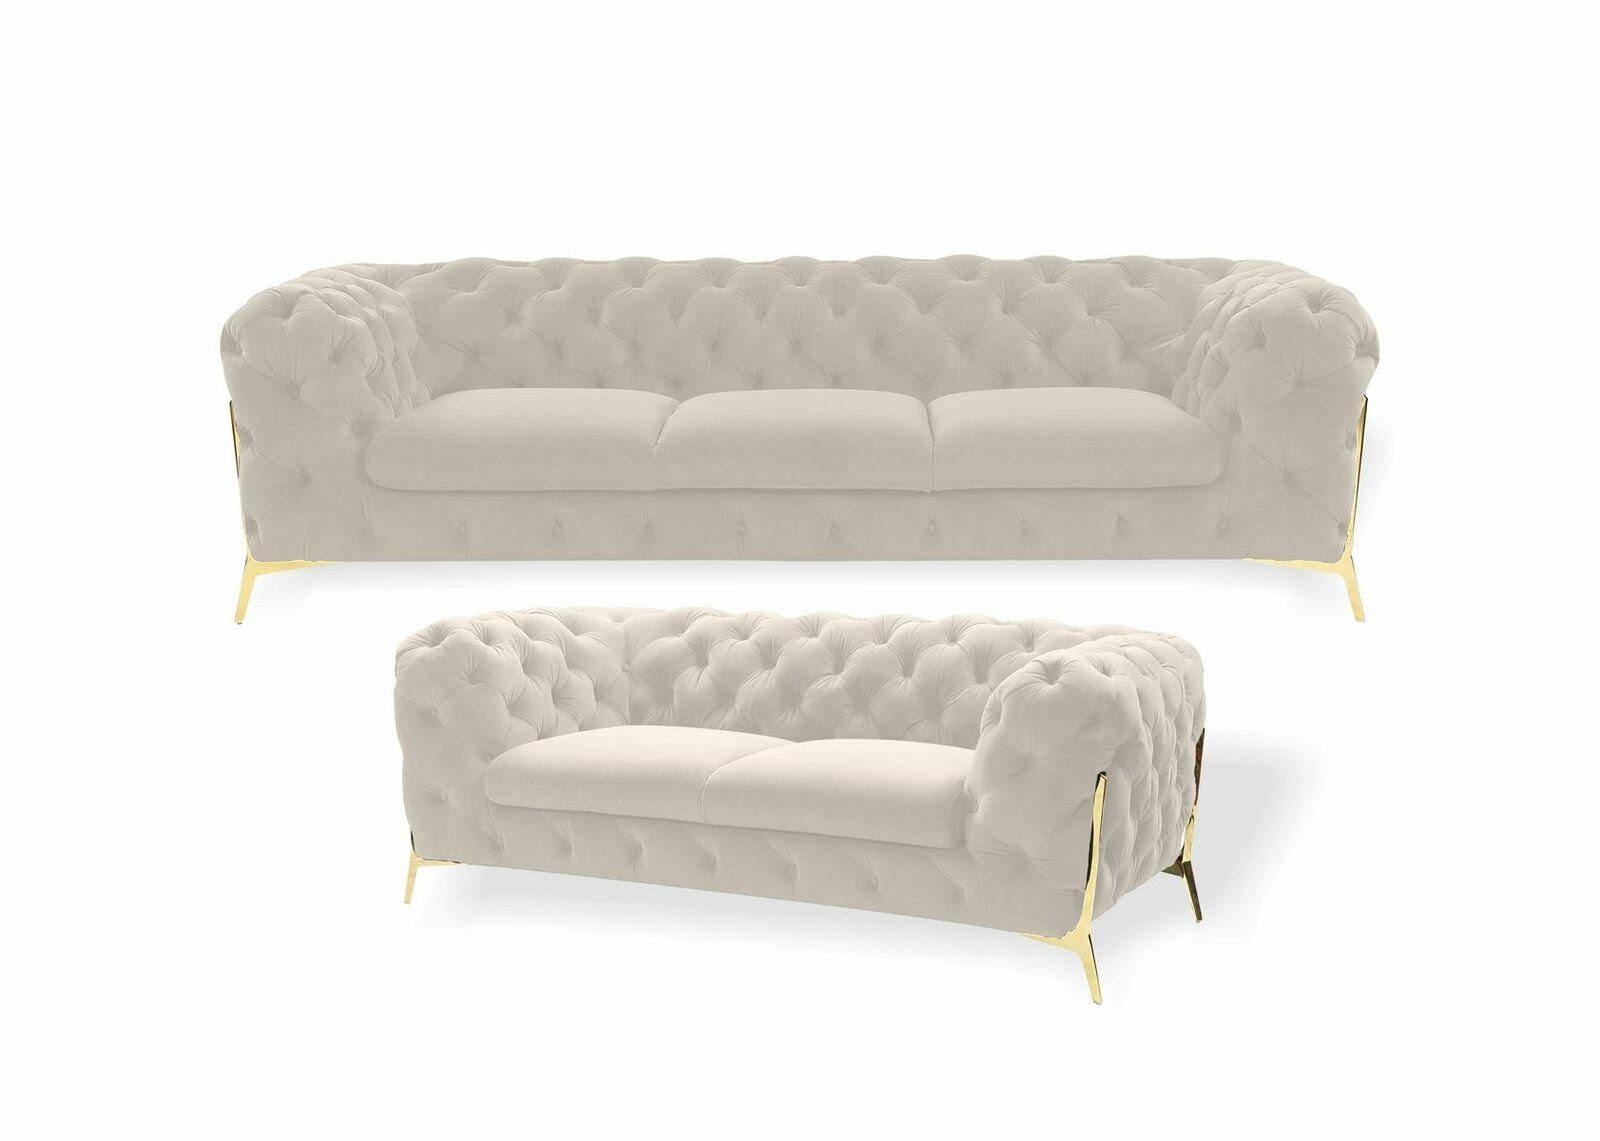 JVmoebel Made in Neu, Europe Sofa Weiß Luxus 3+2 Moderne Sitzer Couchgarnitur Blaue Chesterfield